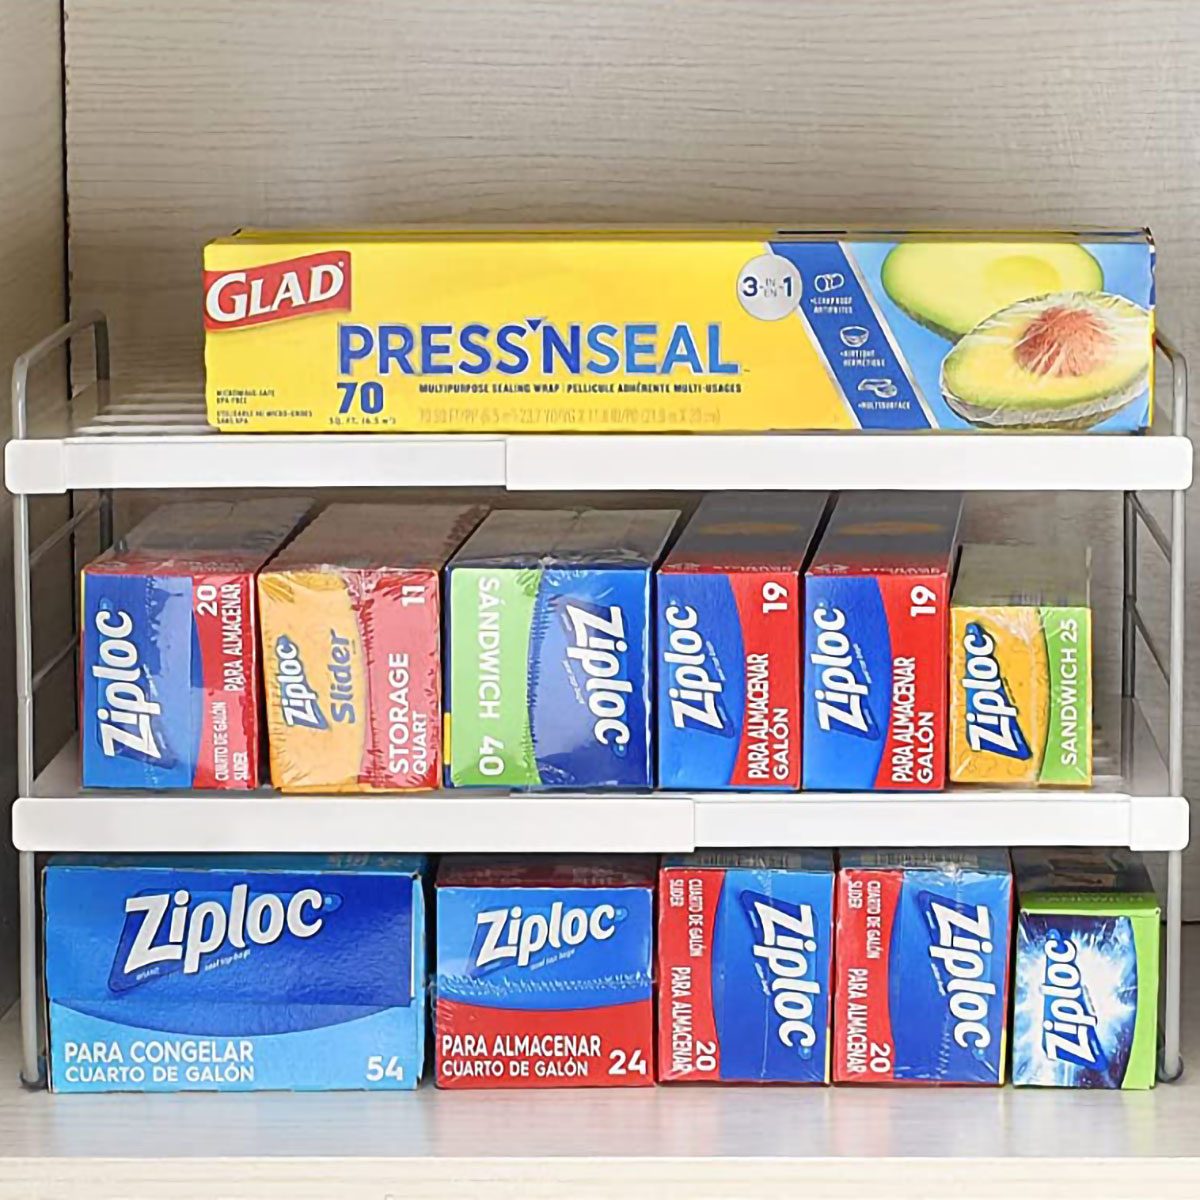 Adhesive Kitchen Wrap Cabinet Storage Organizer Bin by mDesign